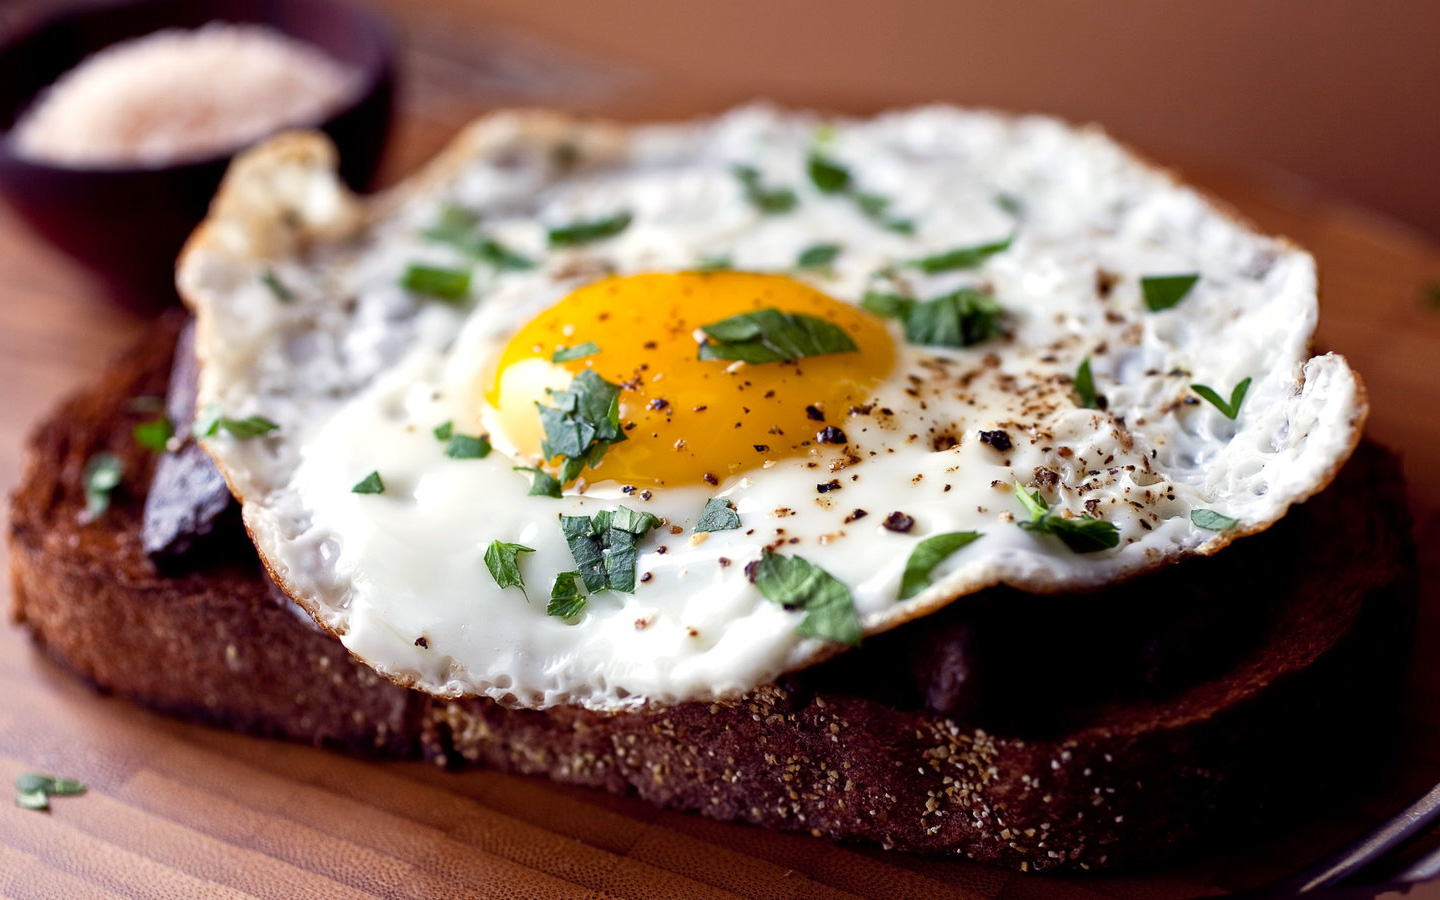 Ăn trứng vào buổi sáng rất bổ dưỡng nhưng tránh 3 điều kiêng kỵ này, nếu không sẽ tạo sỏi dạ dày, tích tụ độc tố trong cơ thể - Ảnh 1